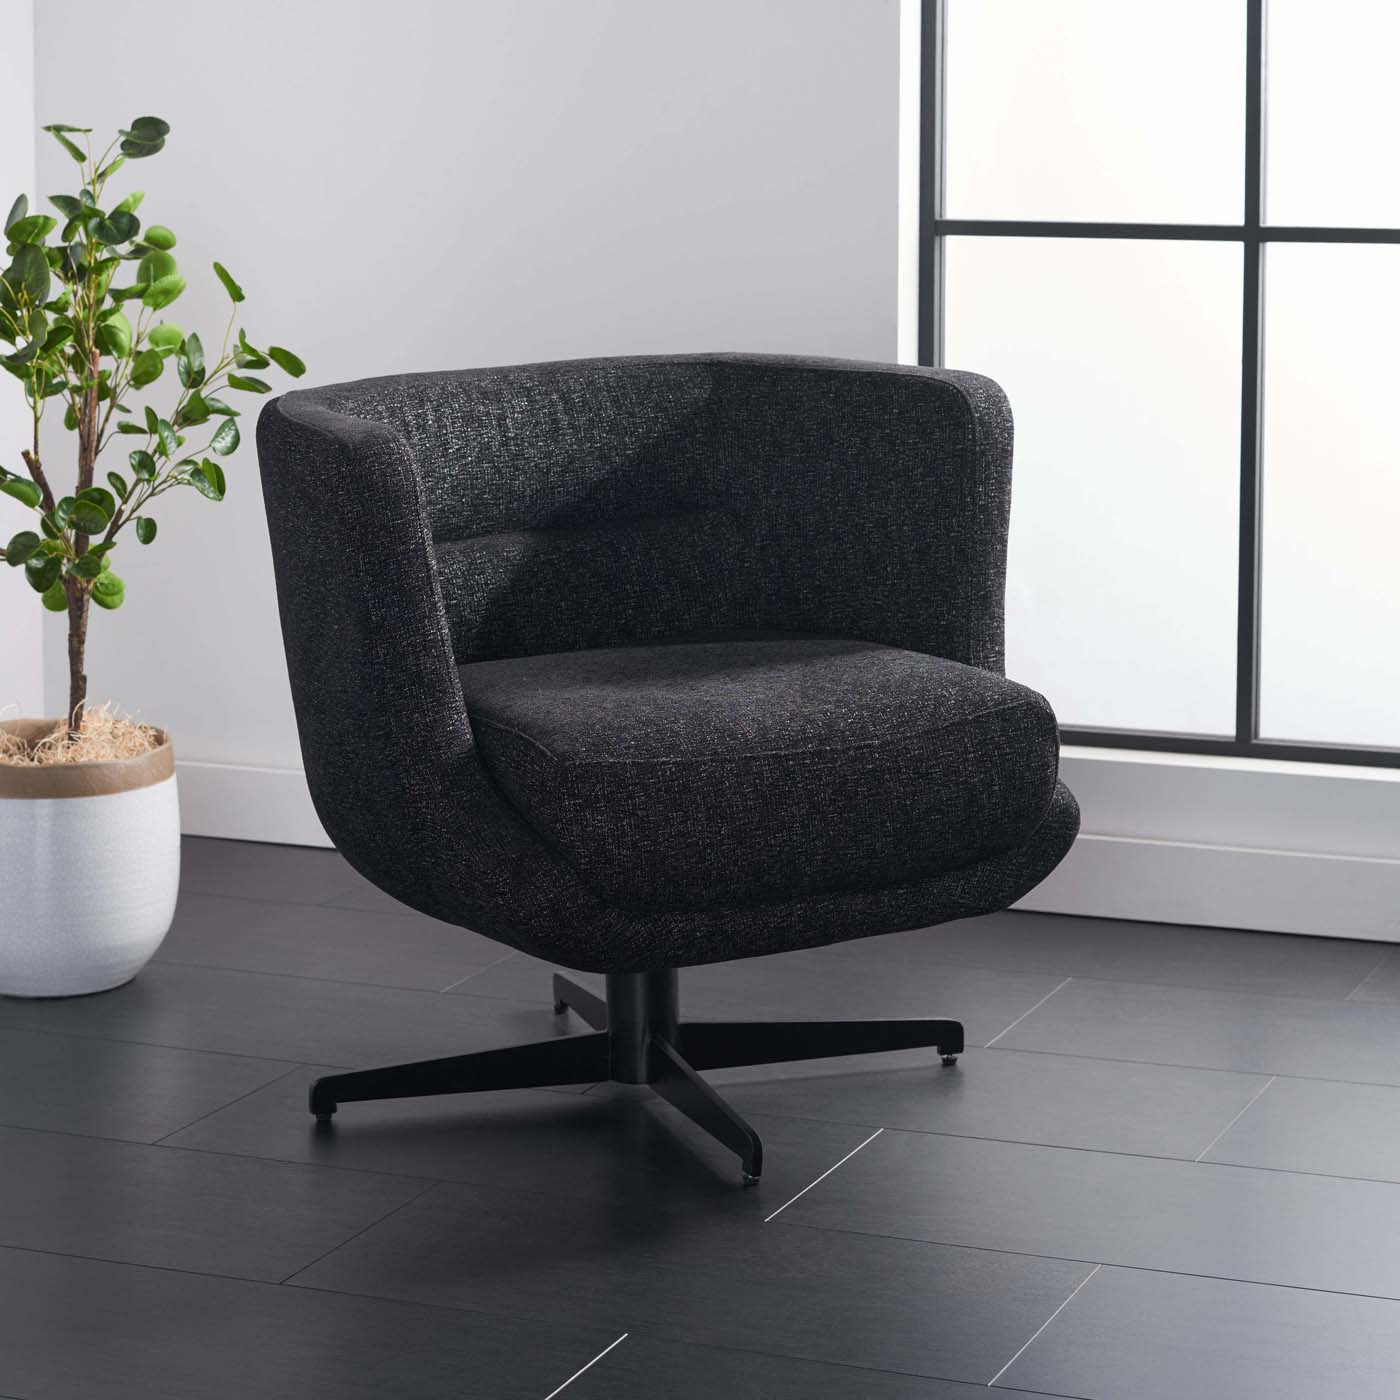 Safavieh Wexler Accent Chair , ACH5202 - Black